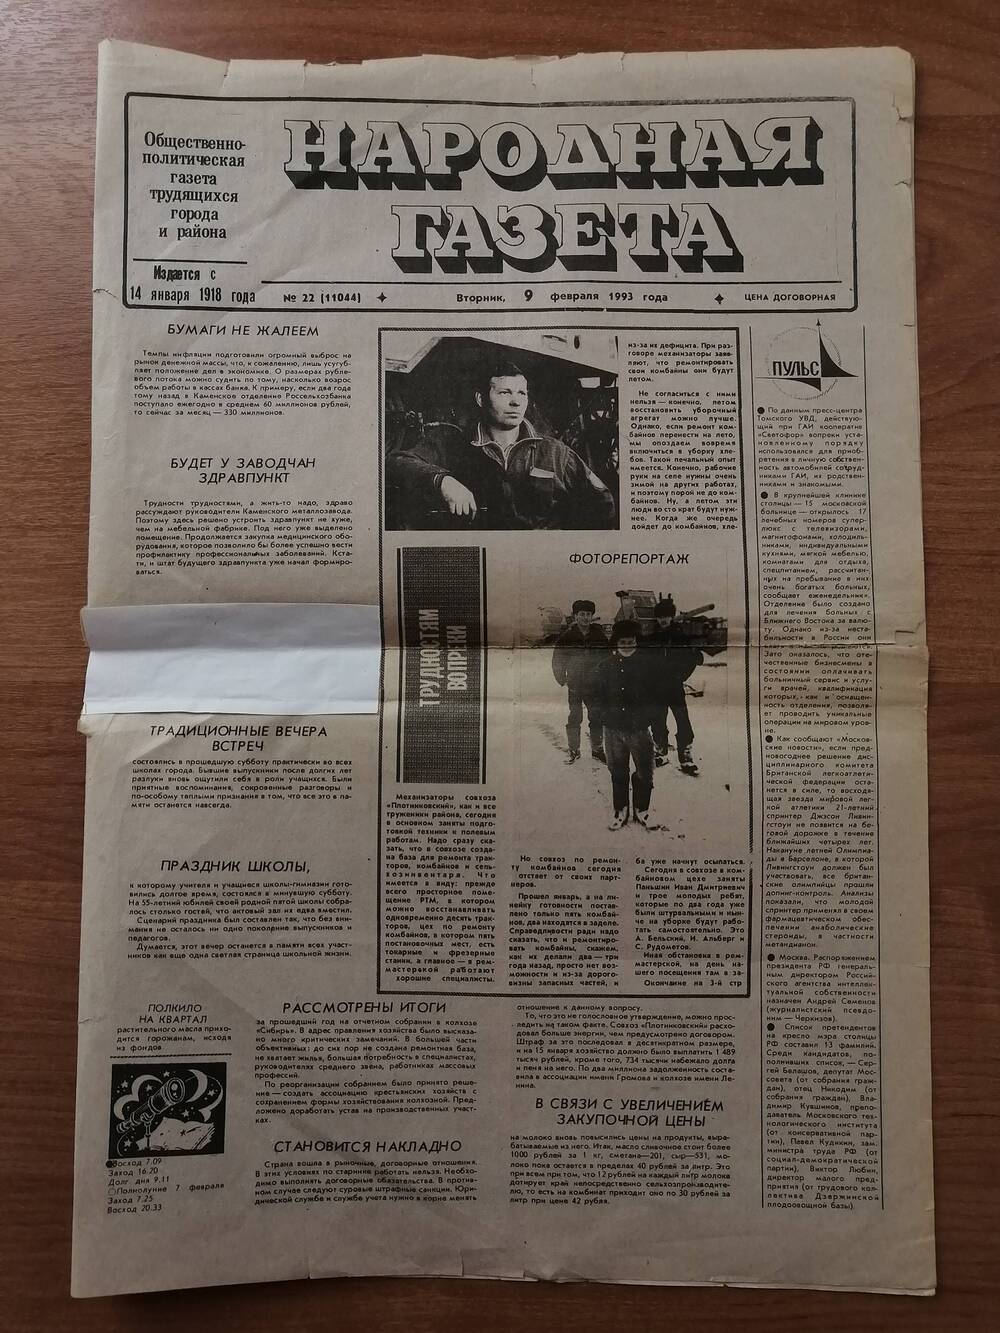 Народная газета №22 (11044) за 9 февраля 1993 года с публикацией Нельзя согласиться Парфенова Е.Е. о возникновении города Камня-на-Оби.